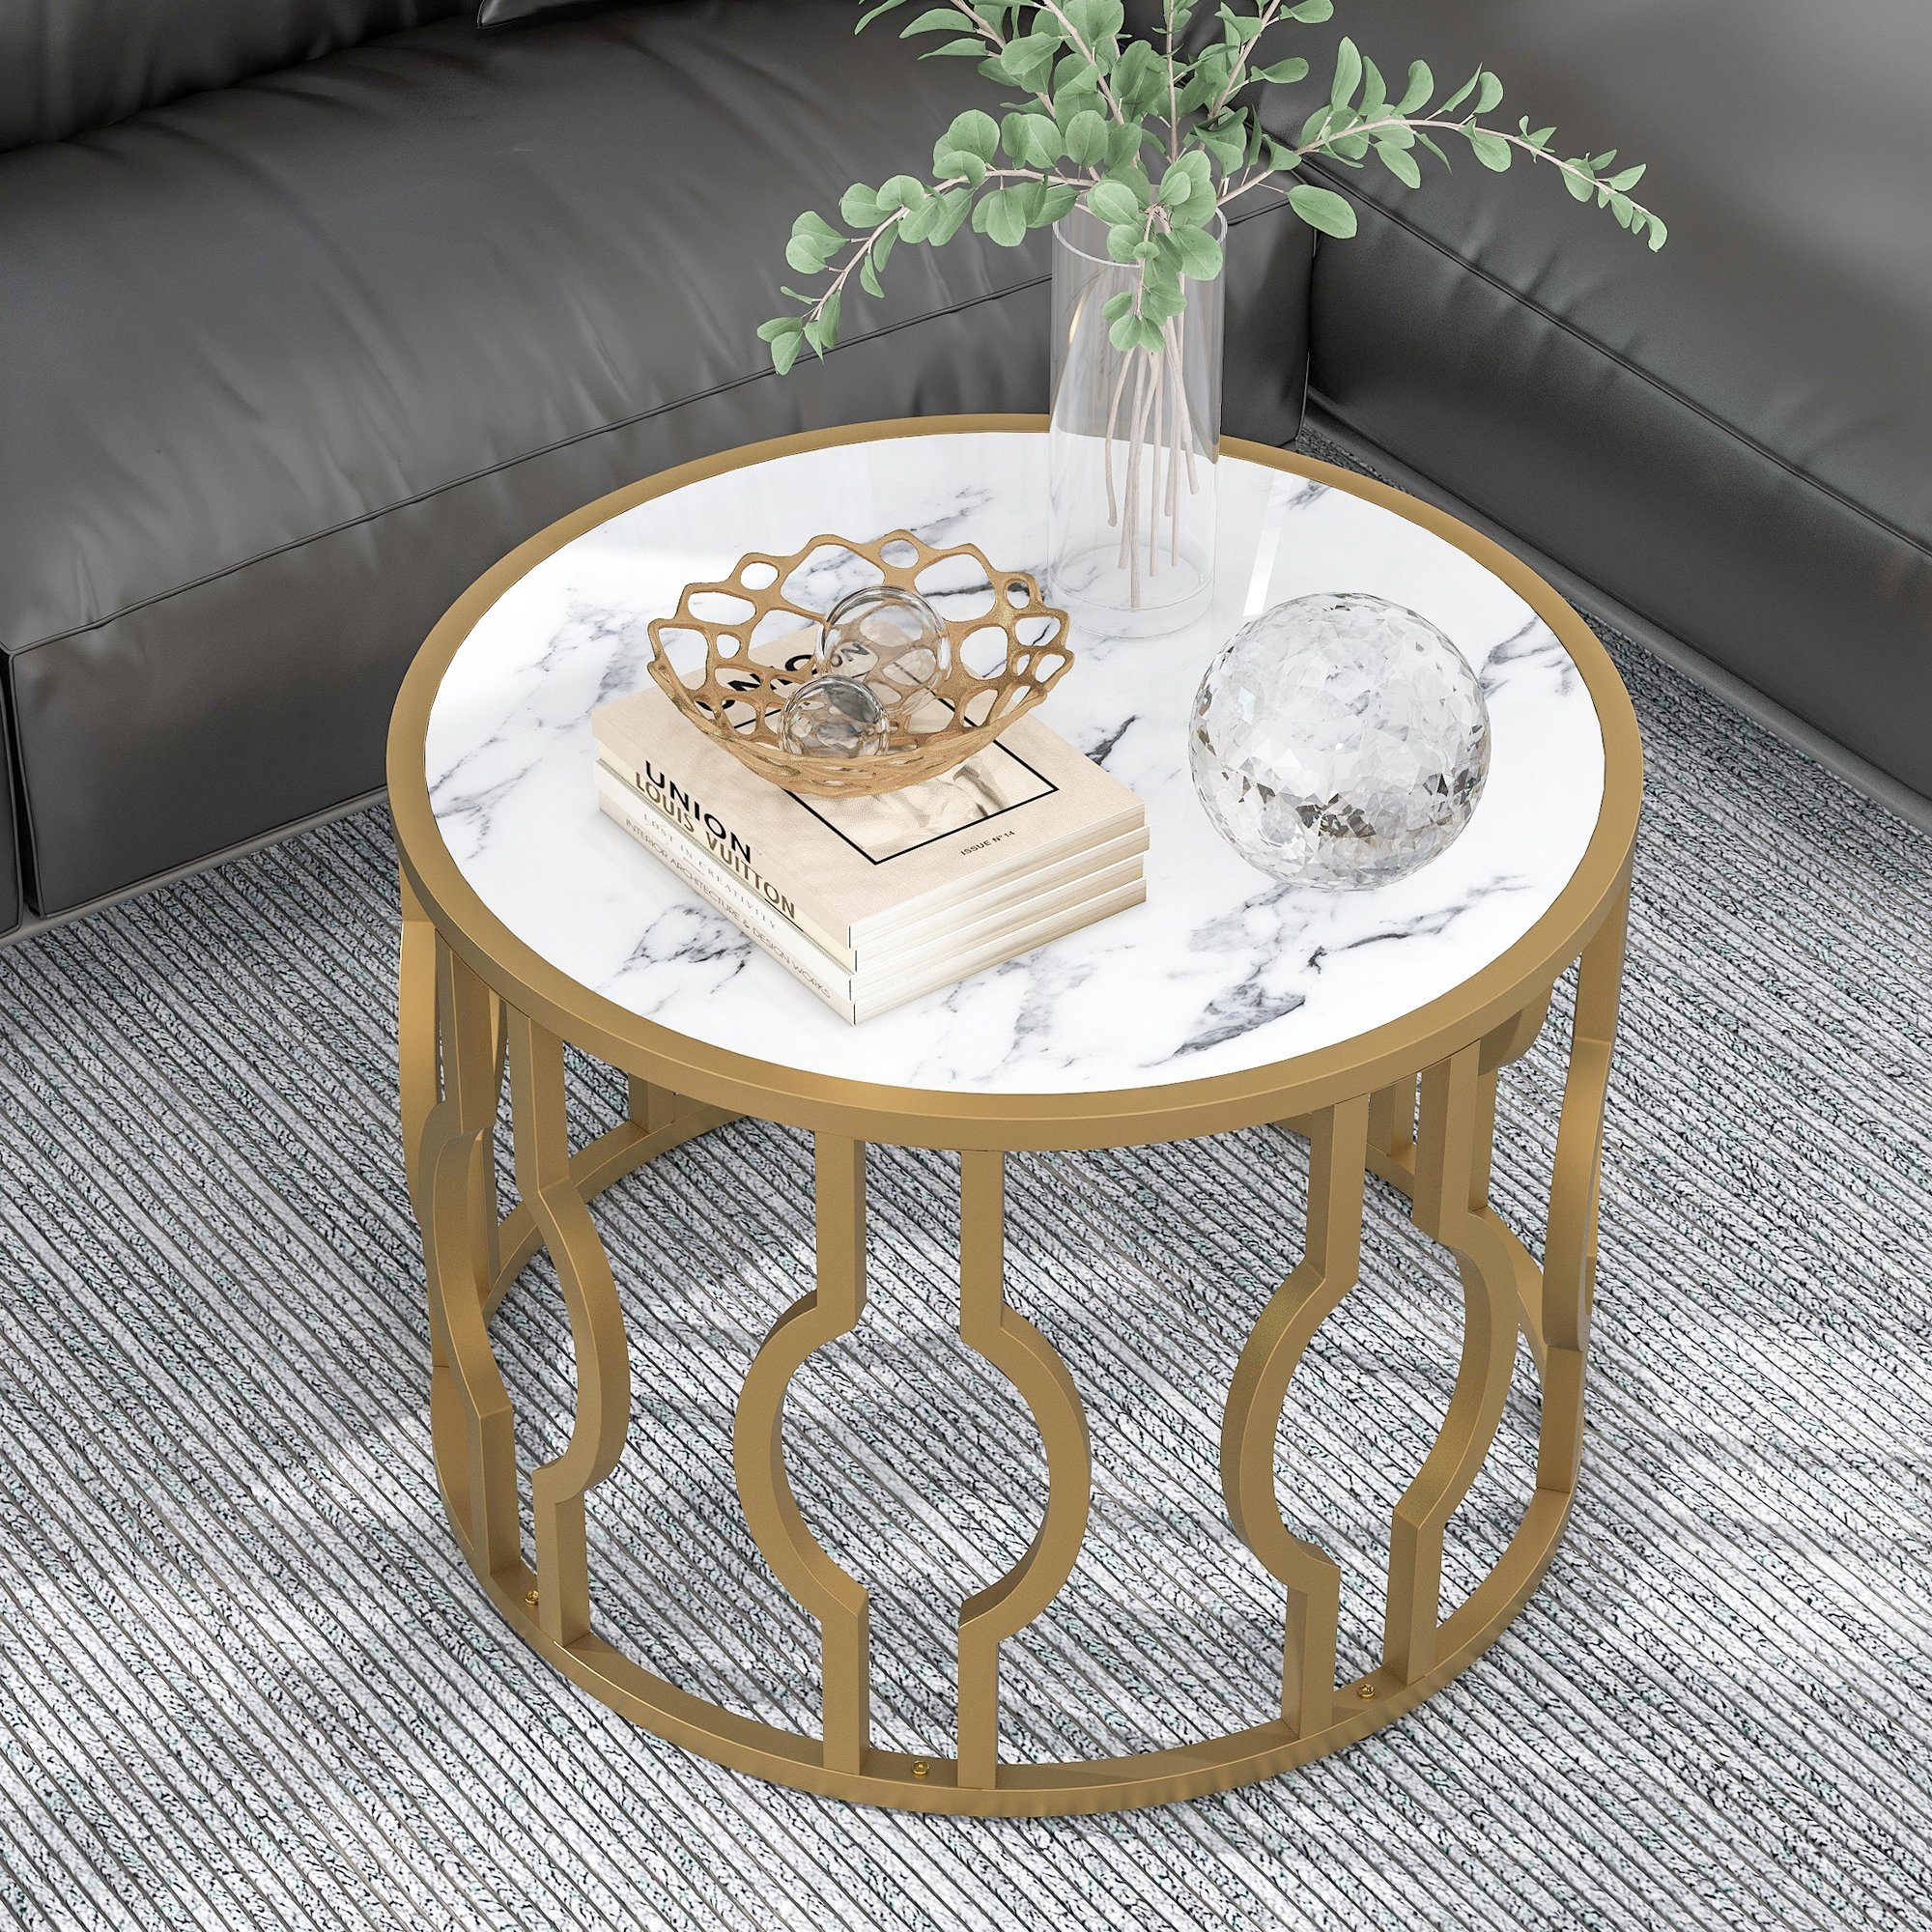 Rund Marmoroptik OKWISH Tisch golden Sofatisch Metallrahmen Beistelltisch 70*46.5cm), Couchtisch weißes mit Wohnzimmer Beistelltisch (Mamormuster